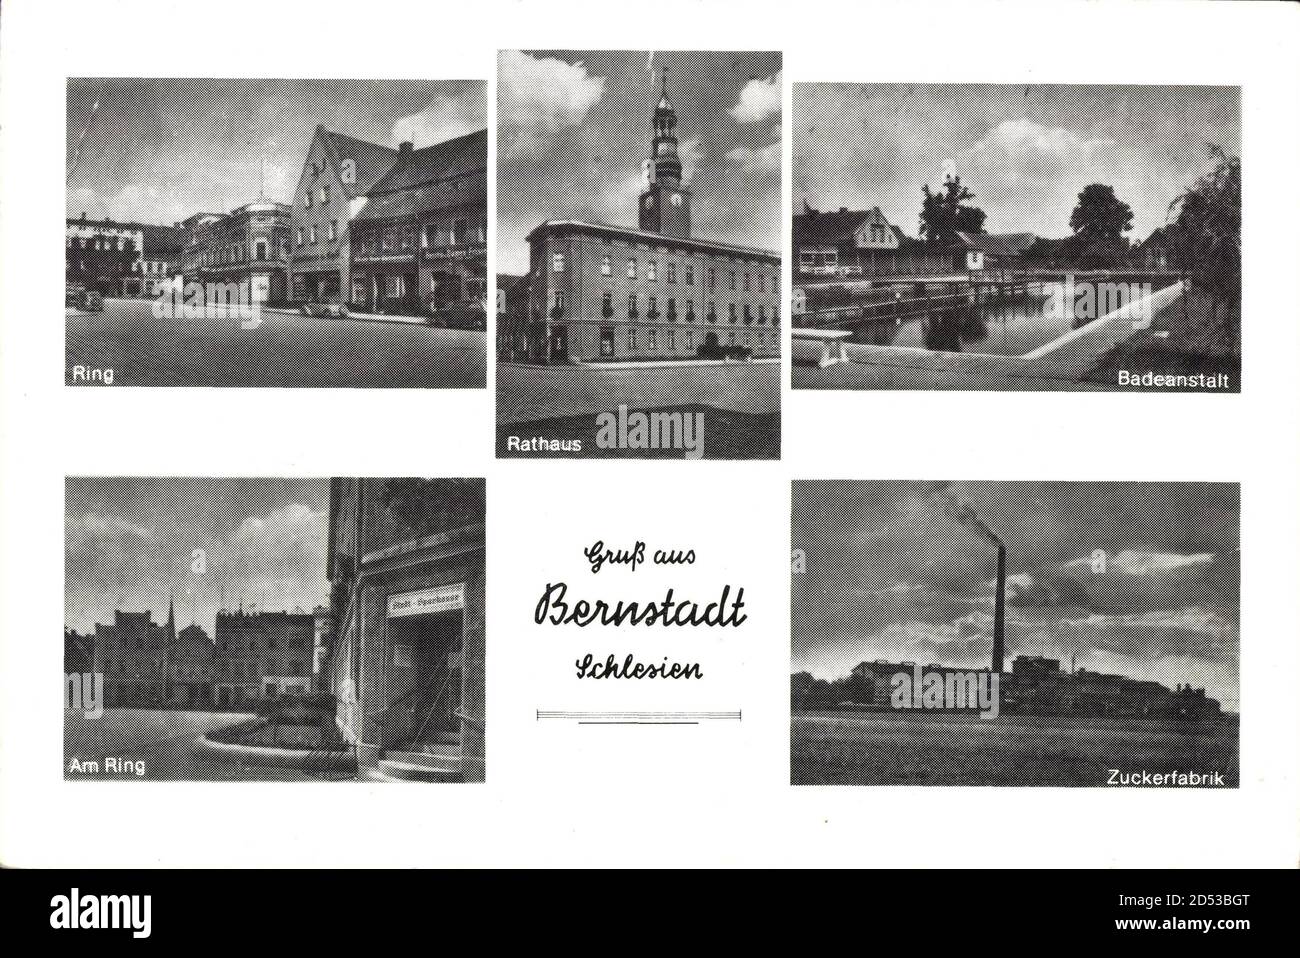 BIERUTÓW Bernstadt Schlesien, Rathaus, Ring, Zuckerfabrik, Badeanstalt | utilizzo in tutto il mondo Foto Stock